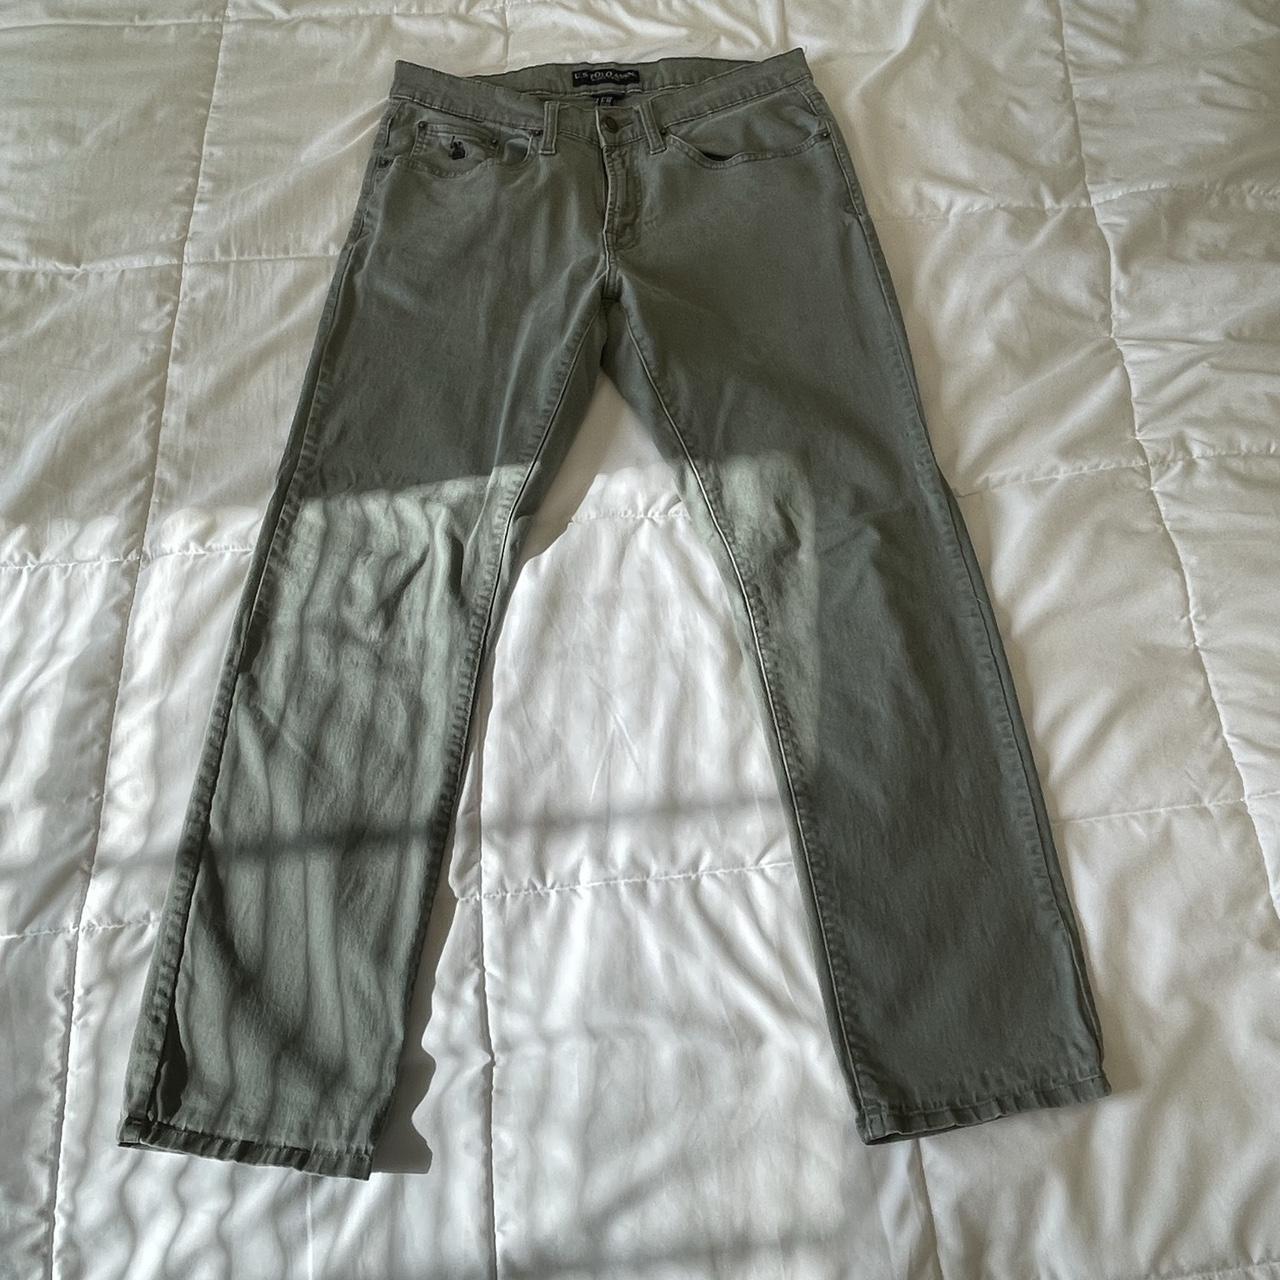 US Polo Assn vintage pants Size 32x30 Condition:... - Depop